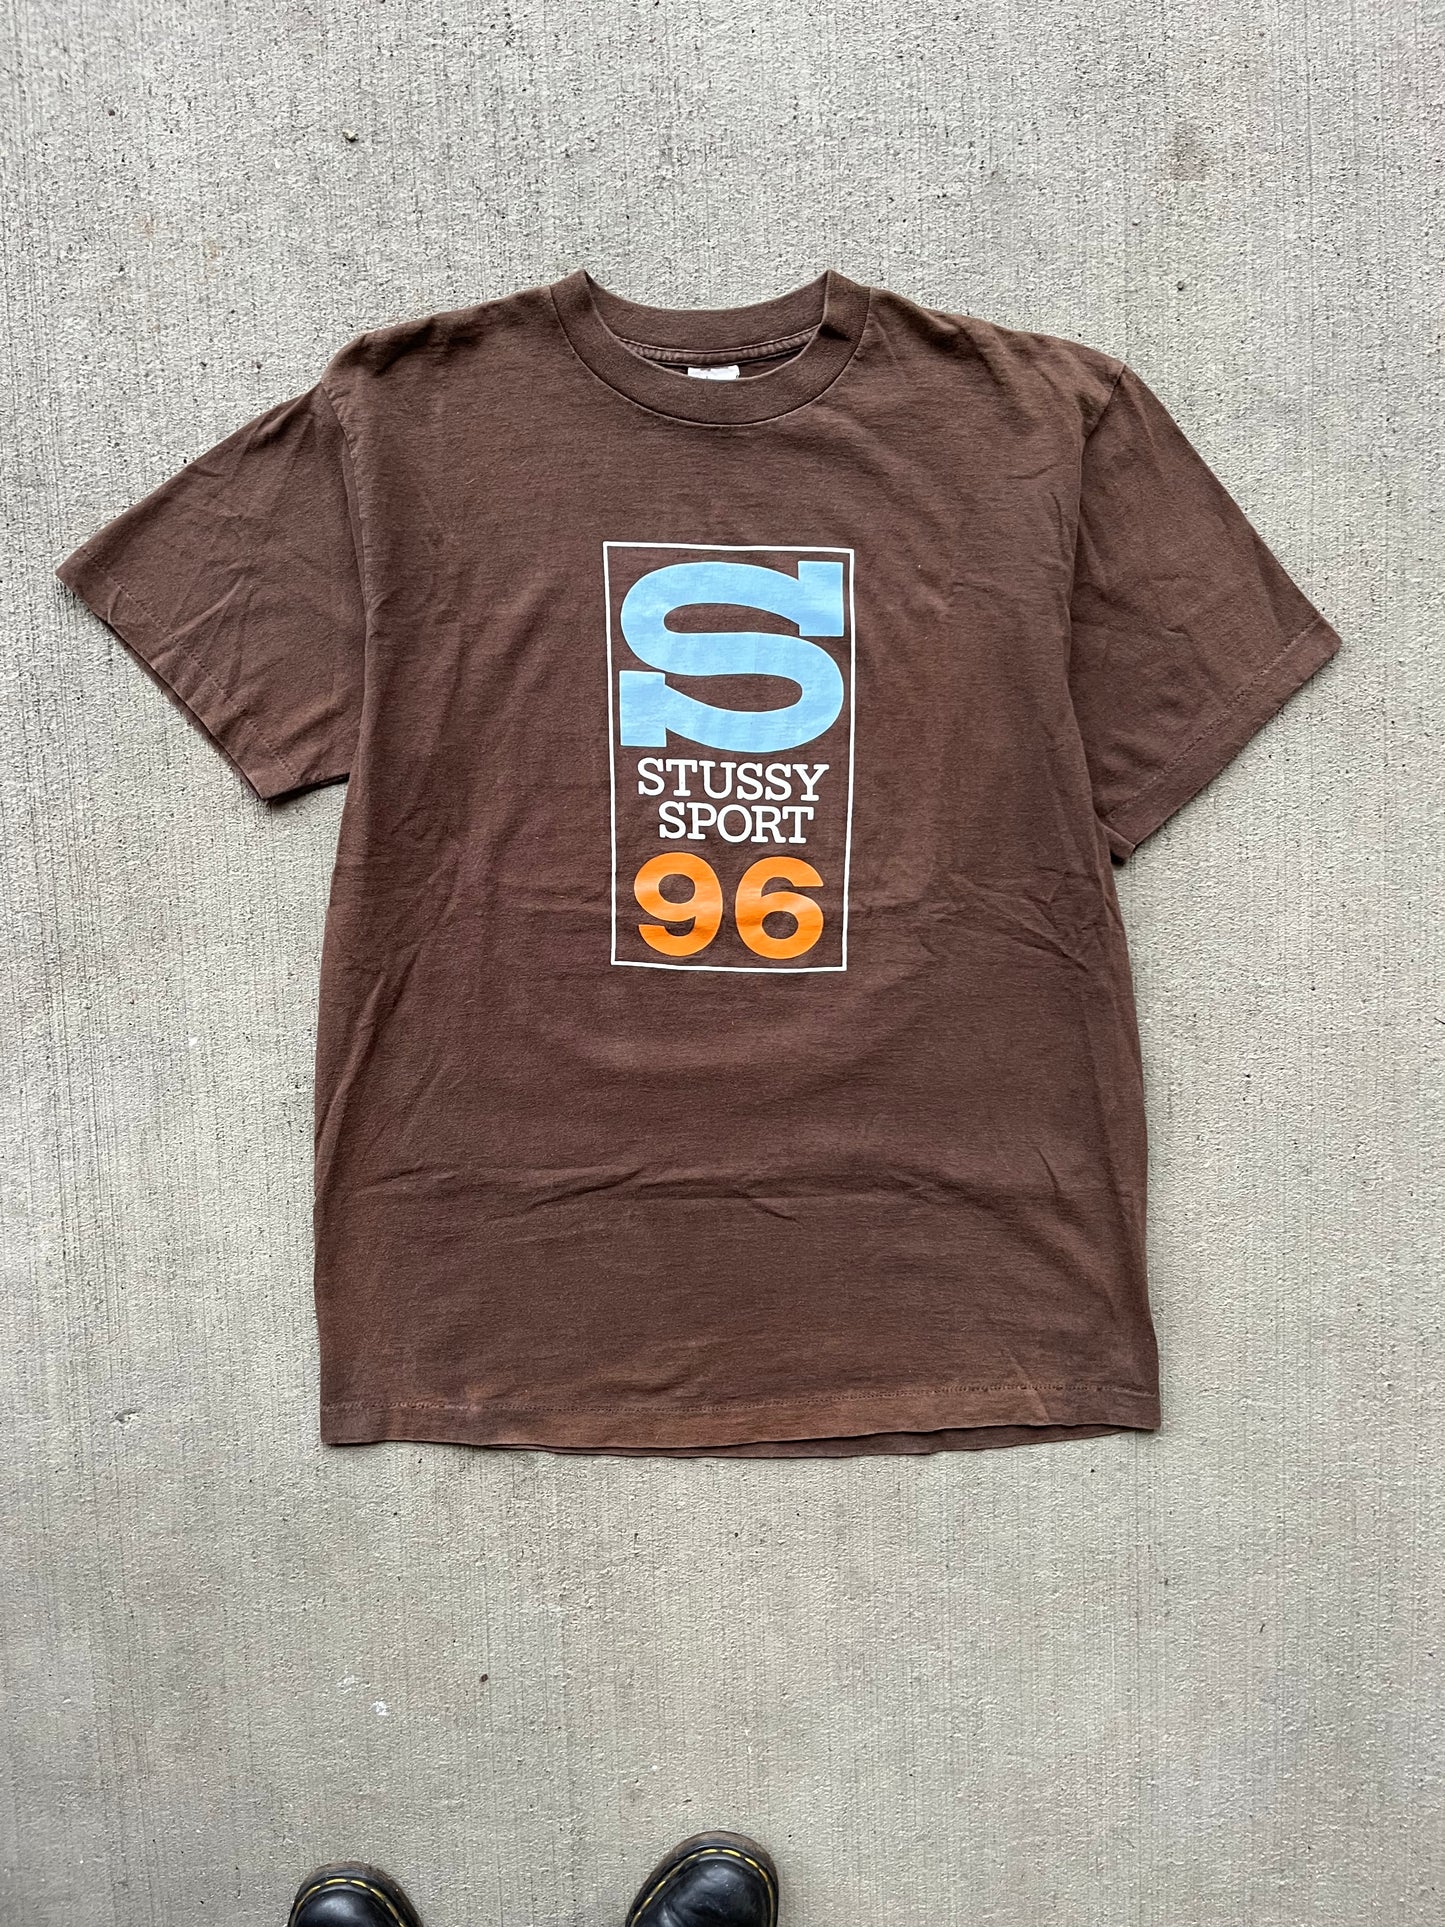 (XL) 1996 Stussy Sports Brown Tee